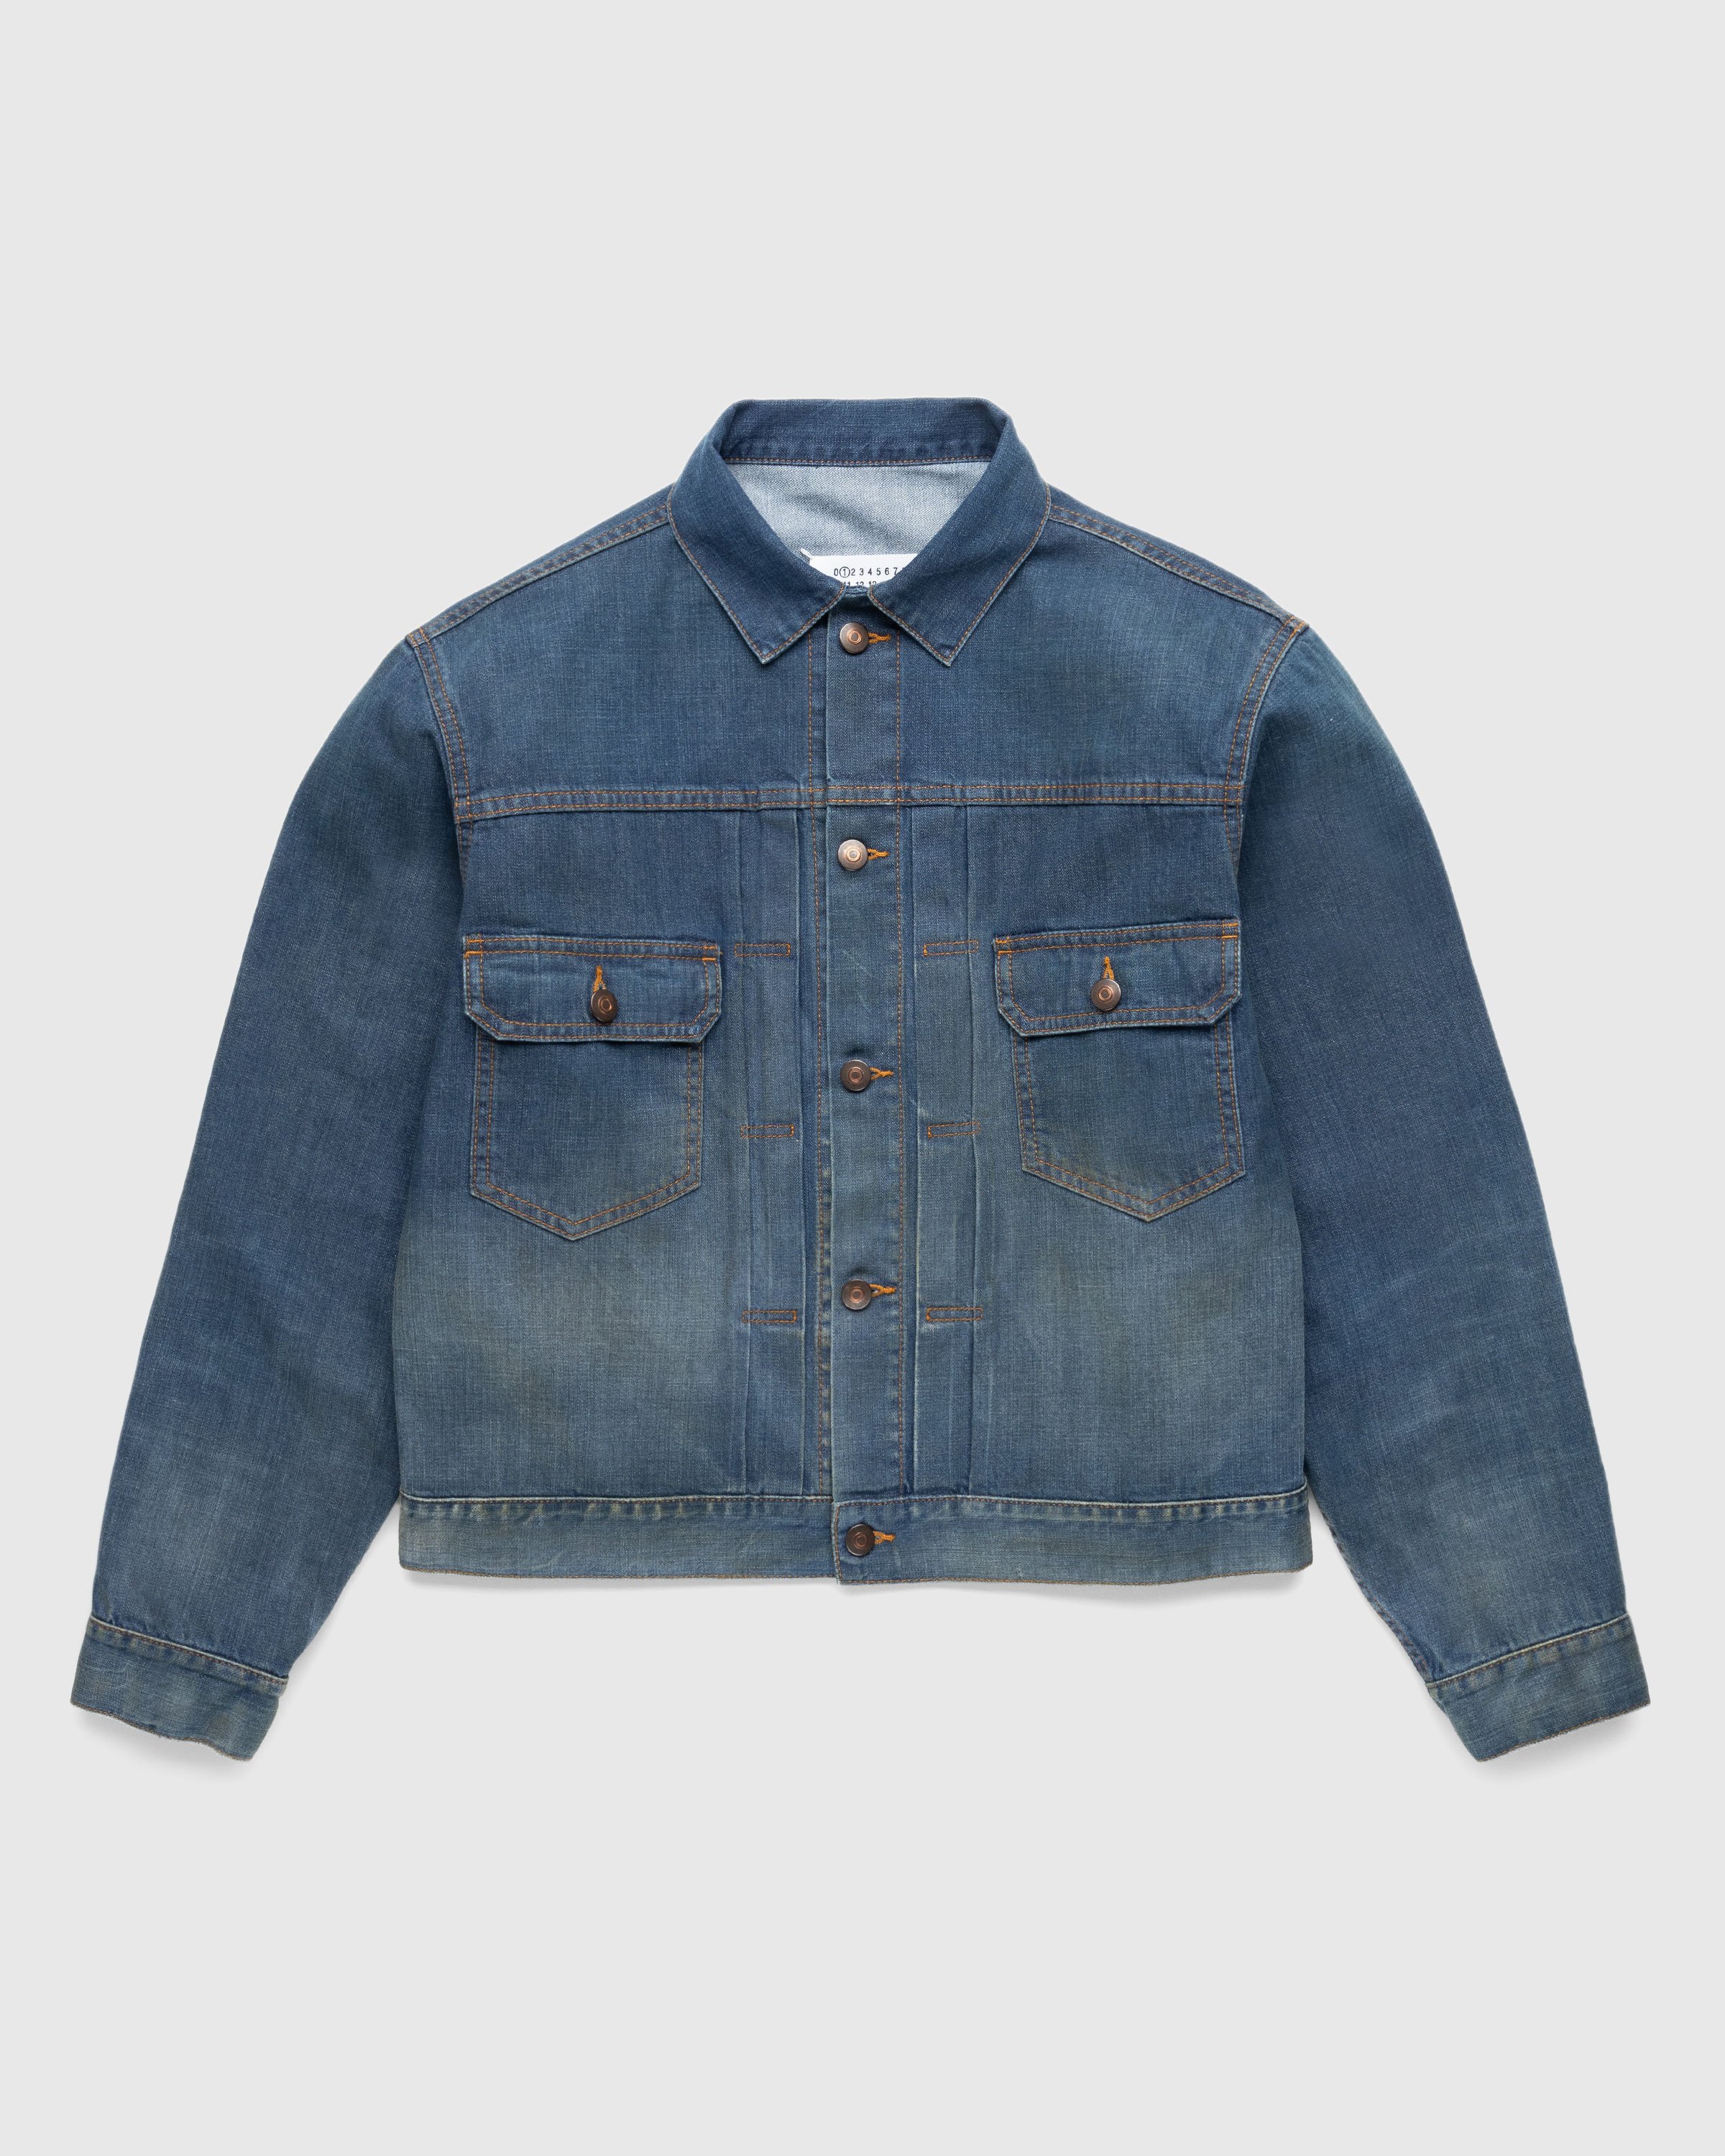 Maison Margiela - Denim Sports Jacket American Classic - Clothing - Blue - Image 1